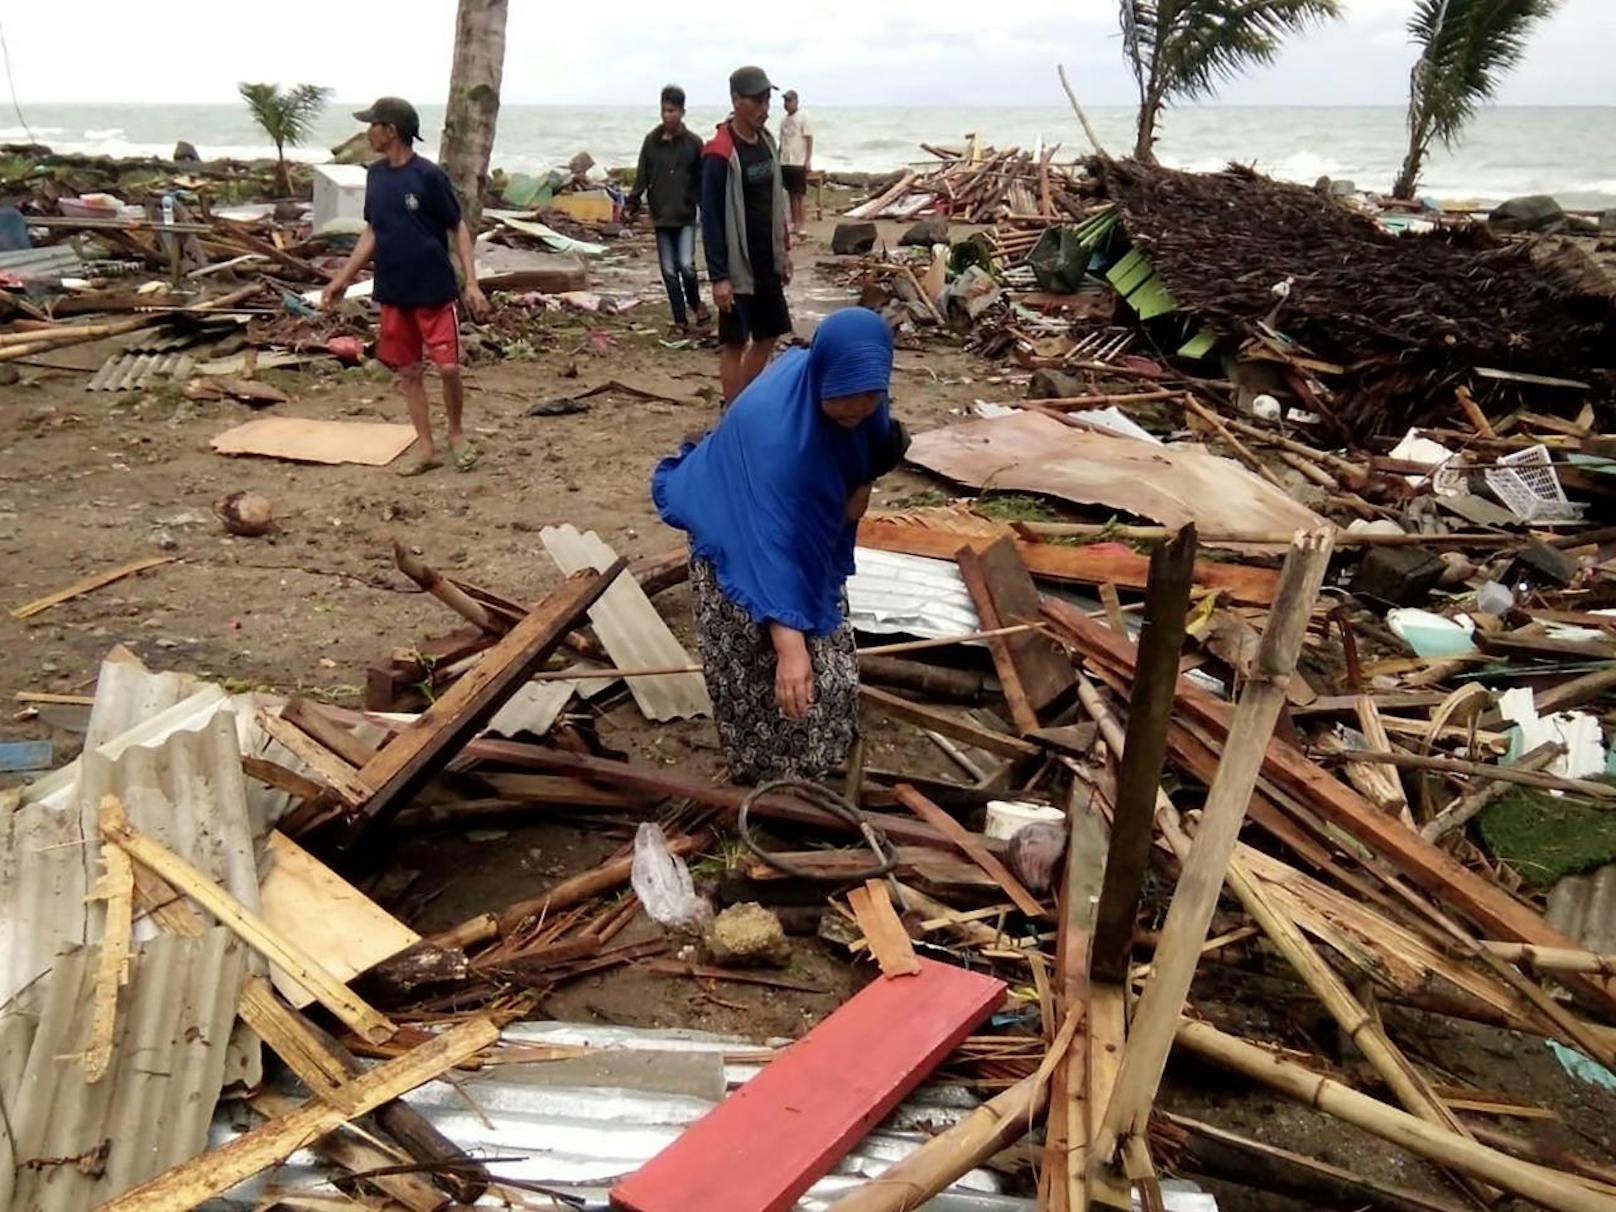 Erst vor einer Woche hatte eine Tsunami-Flutwelle nach einem Vulkanausbruch die indonesischen Inseln Sumatra und Java getroffen. Viele Menschen haben alles verloren.